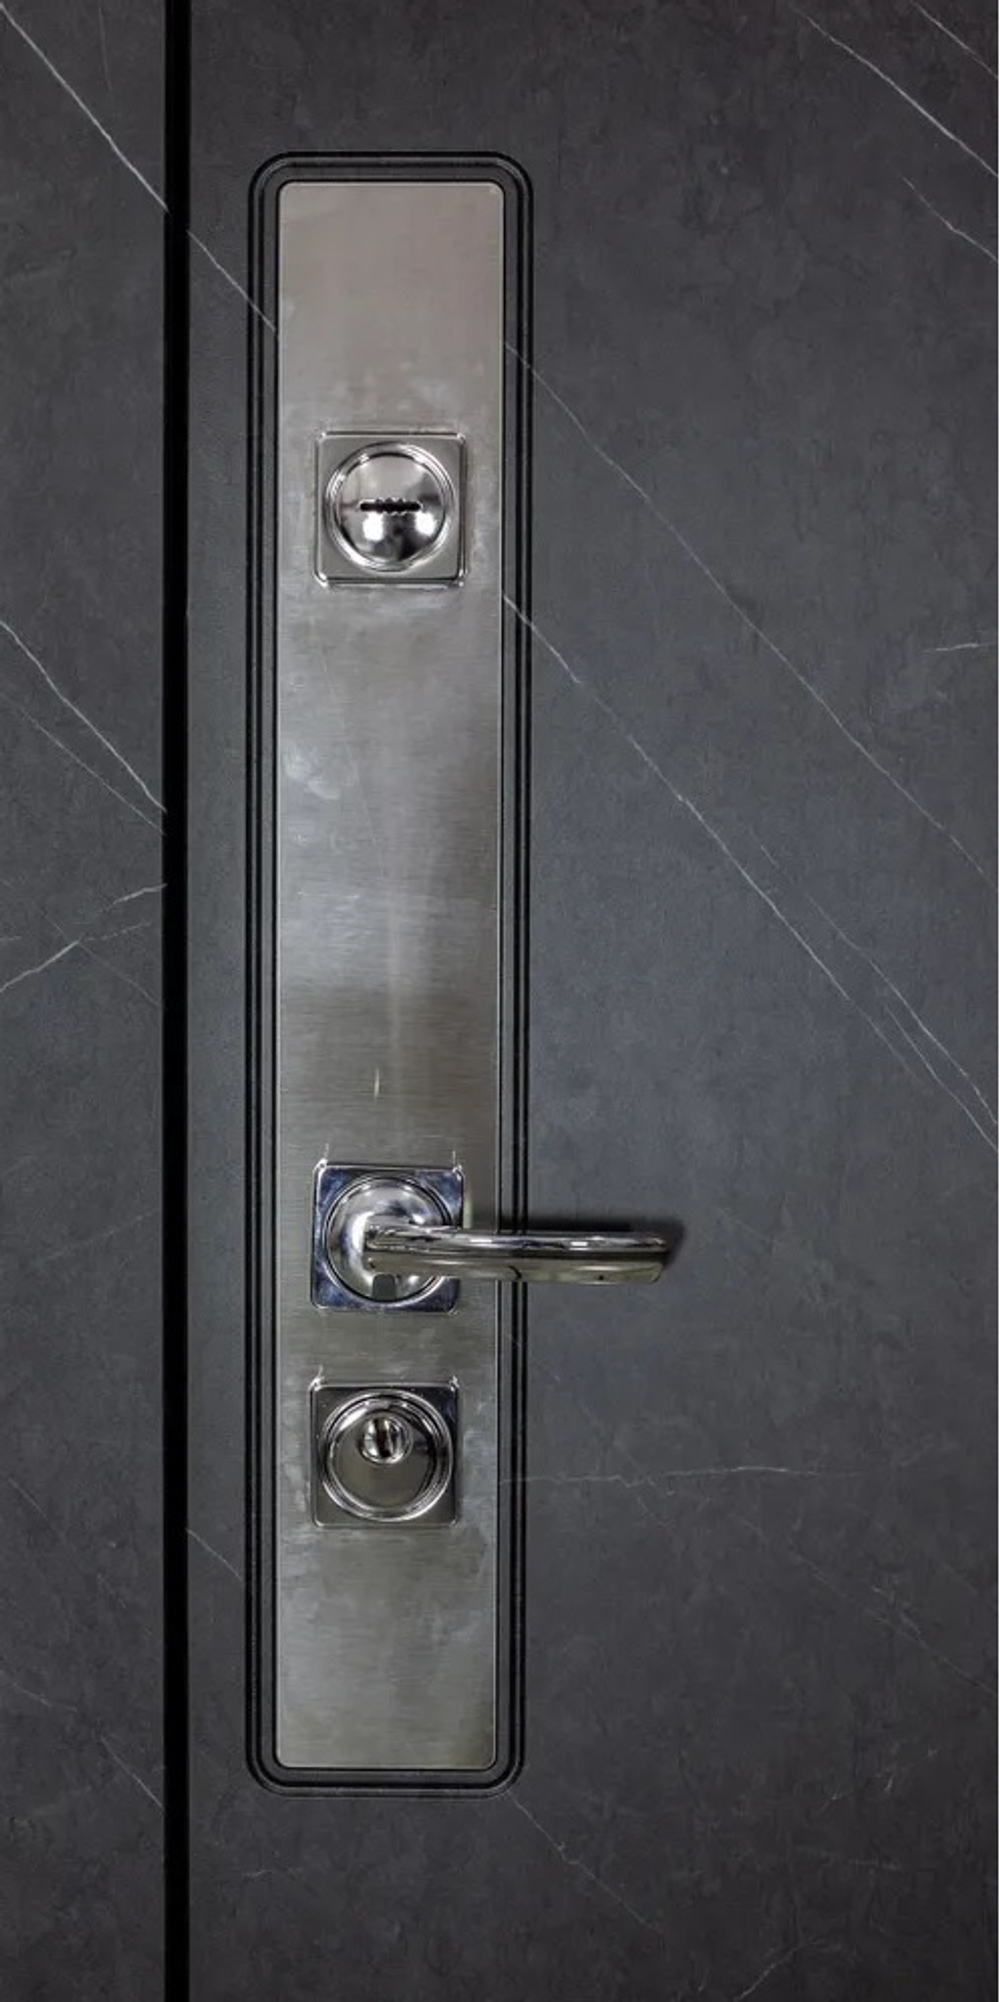 Входная дверь в квартиру STR МХ - 26 Гранит лава оникс, вставка нержавеющая сталь / Д5 Белый софт